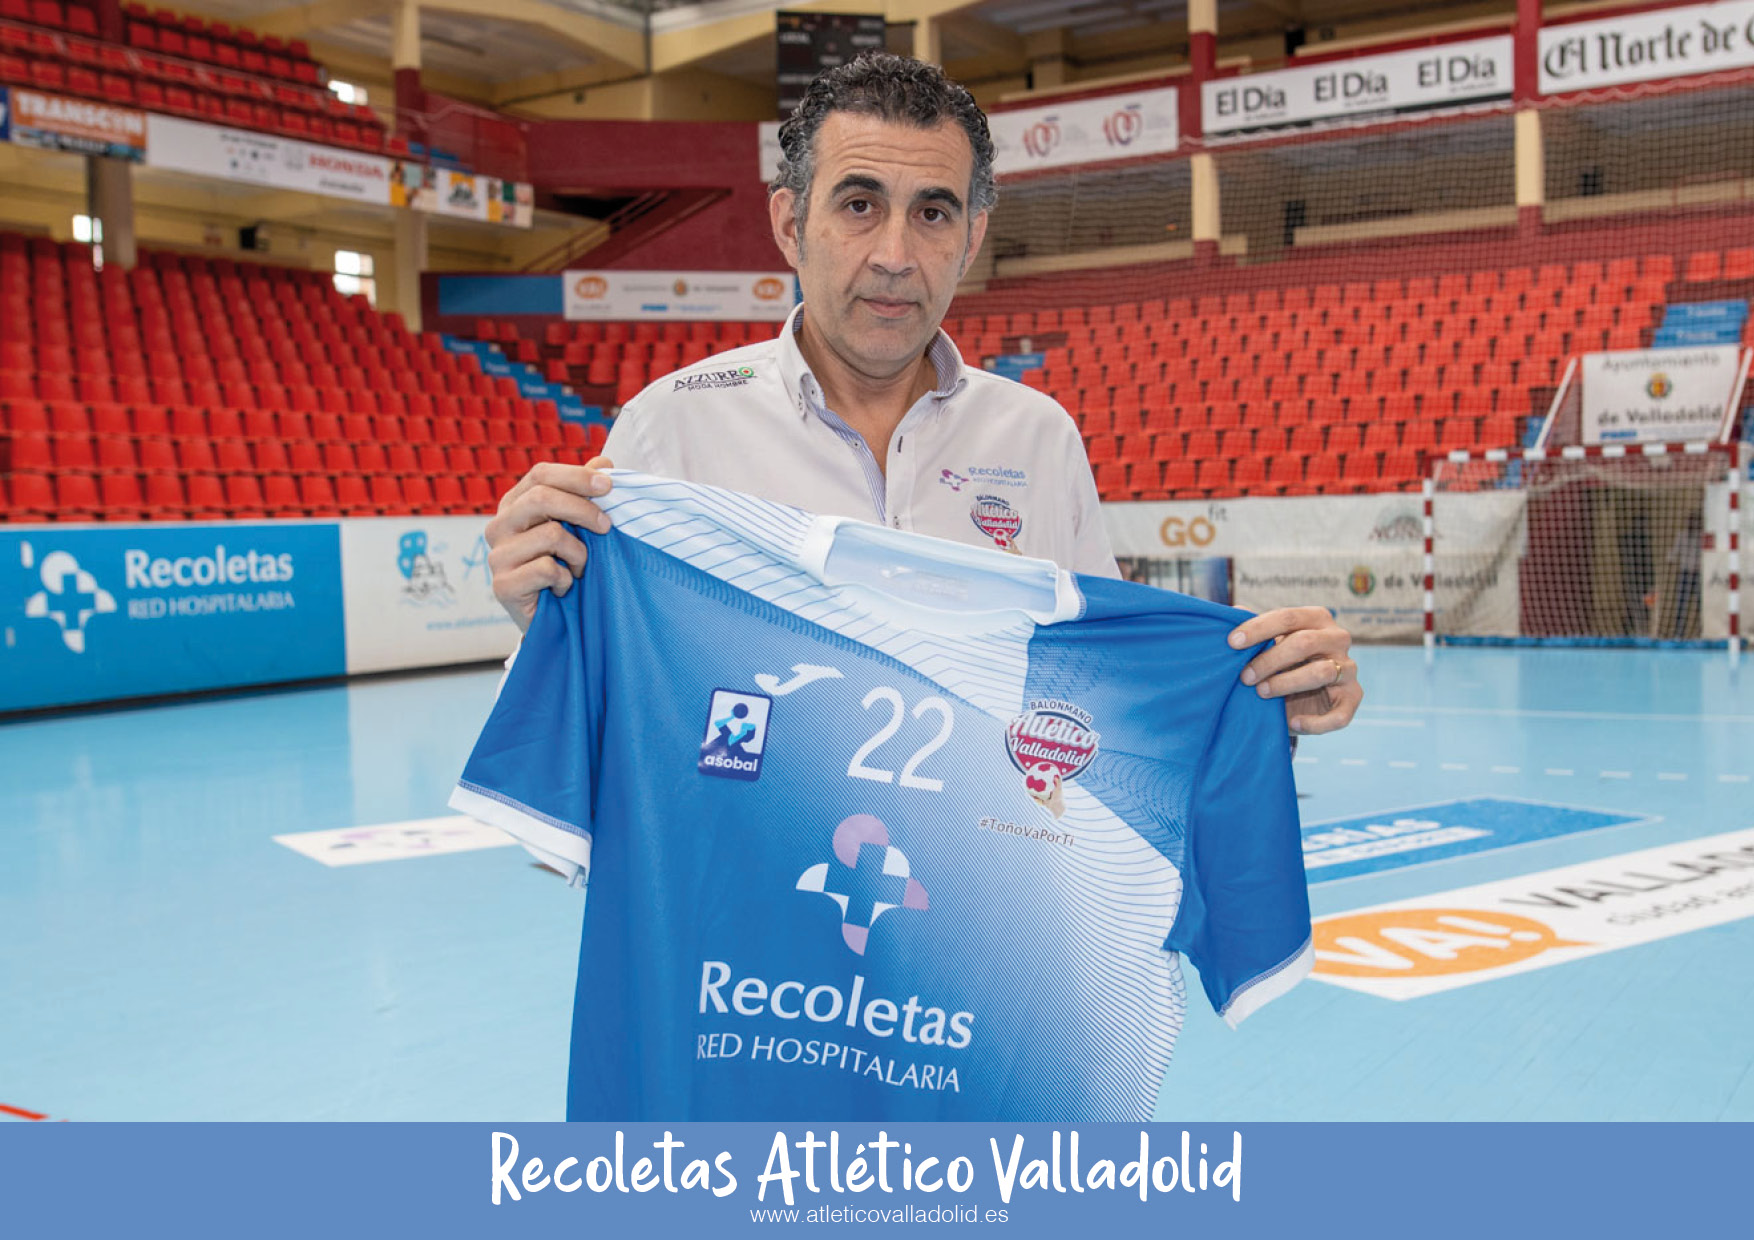 David Pisonero: “Vuelvo a aceptar mi compromiso con el Recoletas Atlético Valladolid para una próxima temporada más apasionante y con muchos retos”